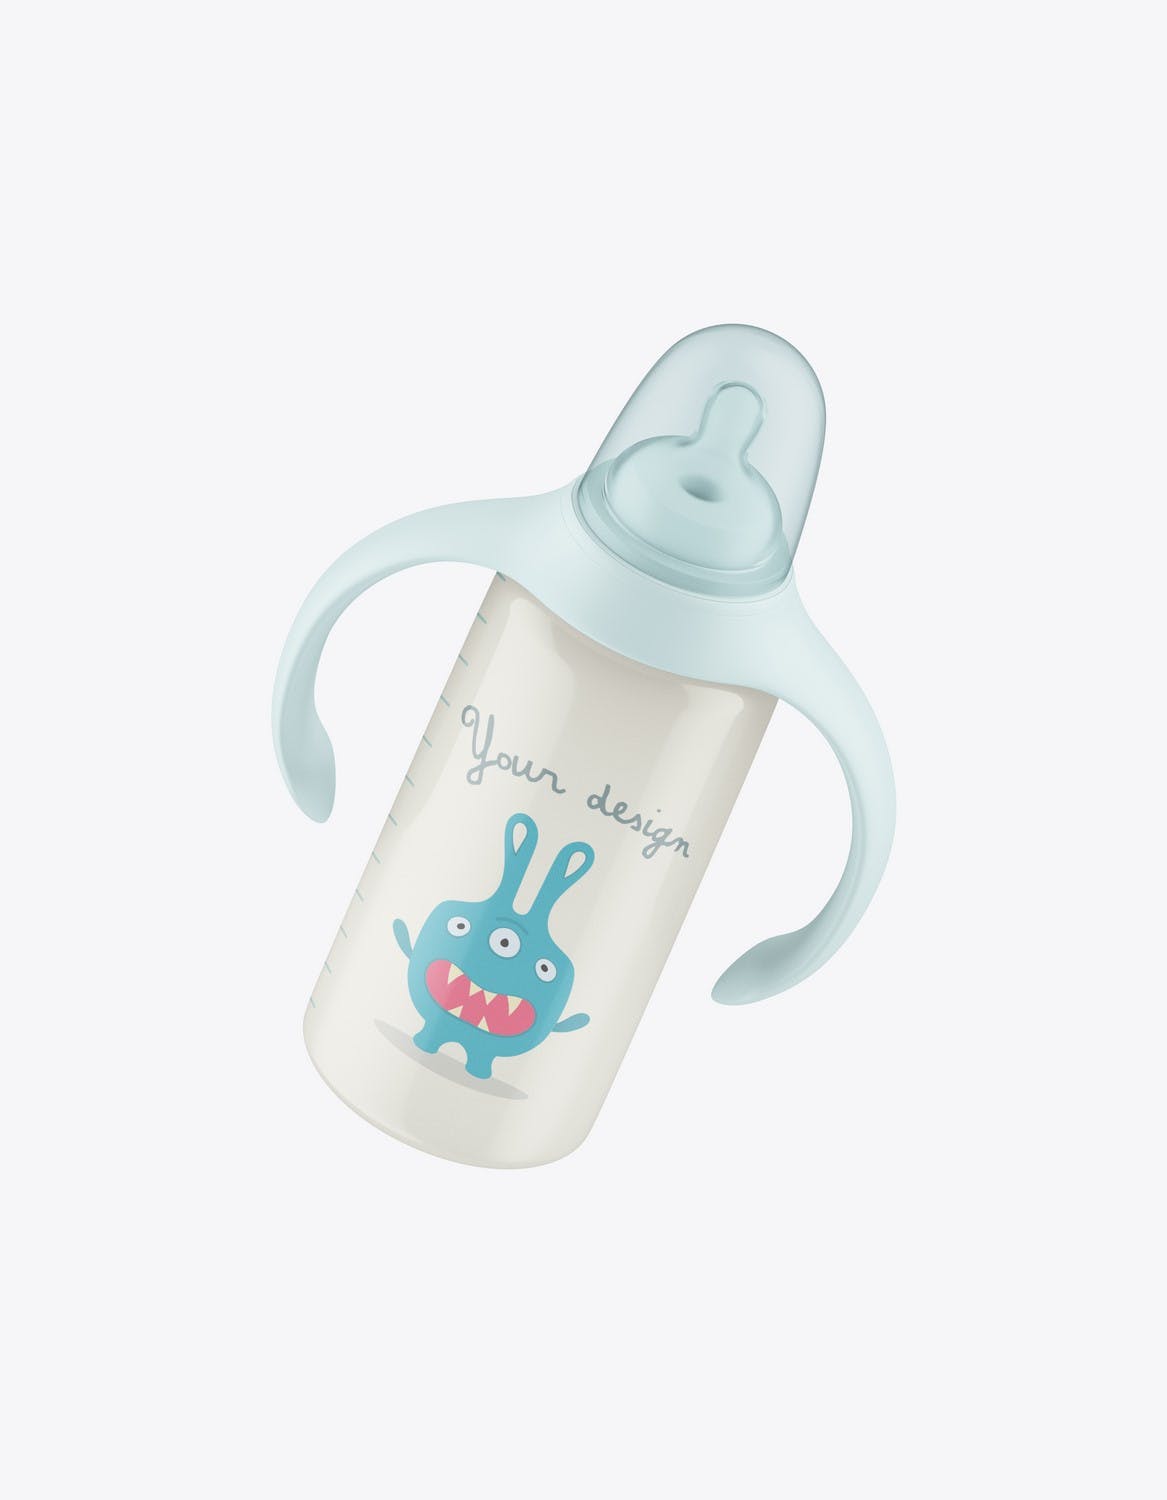 带把手的婴儿奶瓶包装设计样机 Baby Bottle with Handles Mockup 样机素材 第6张